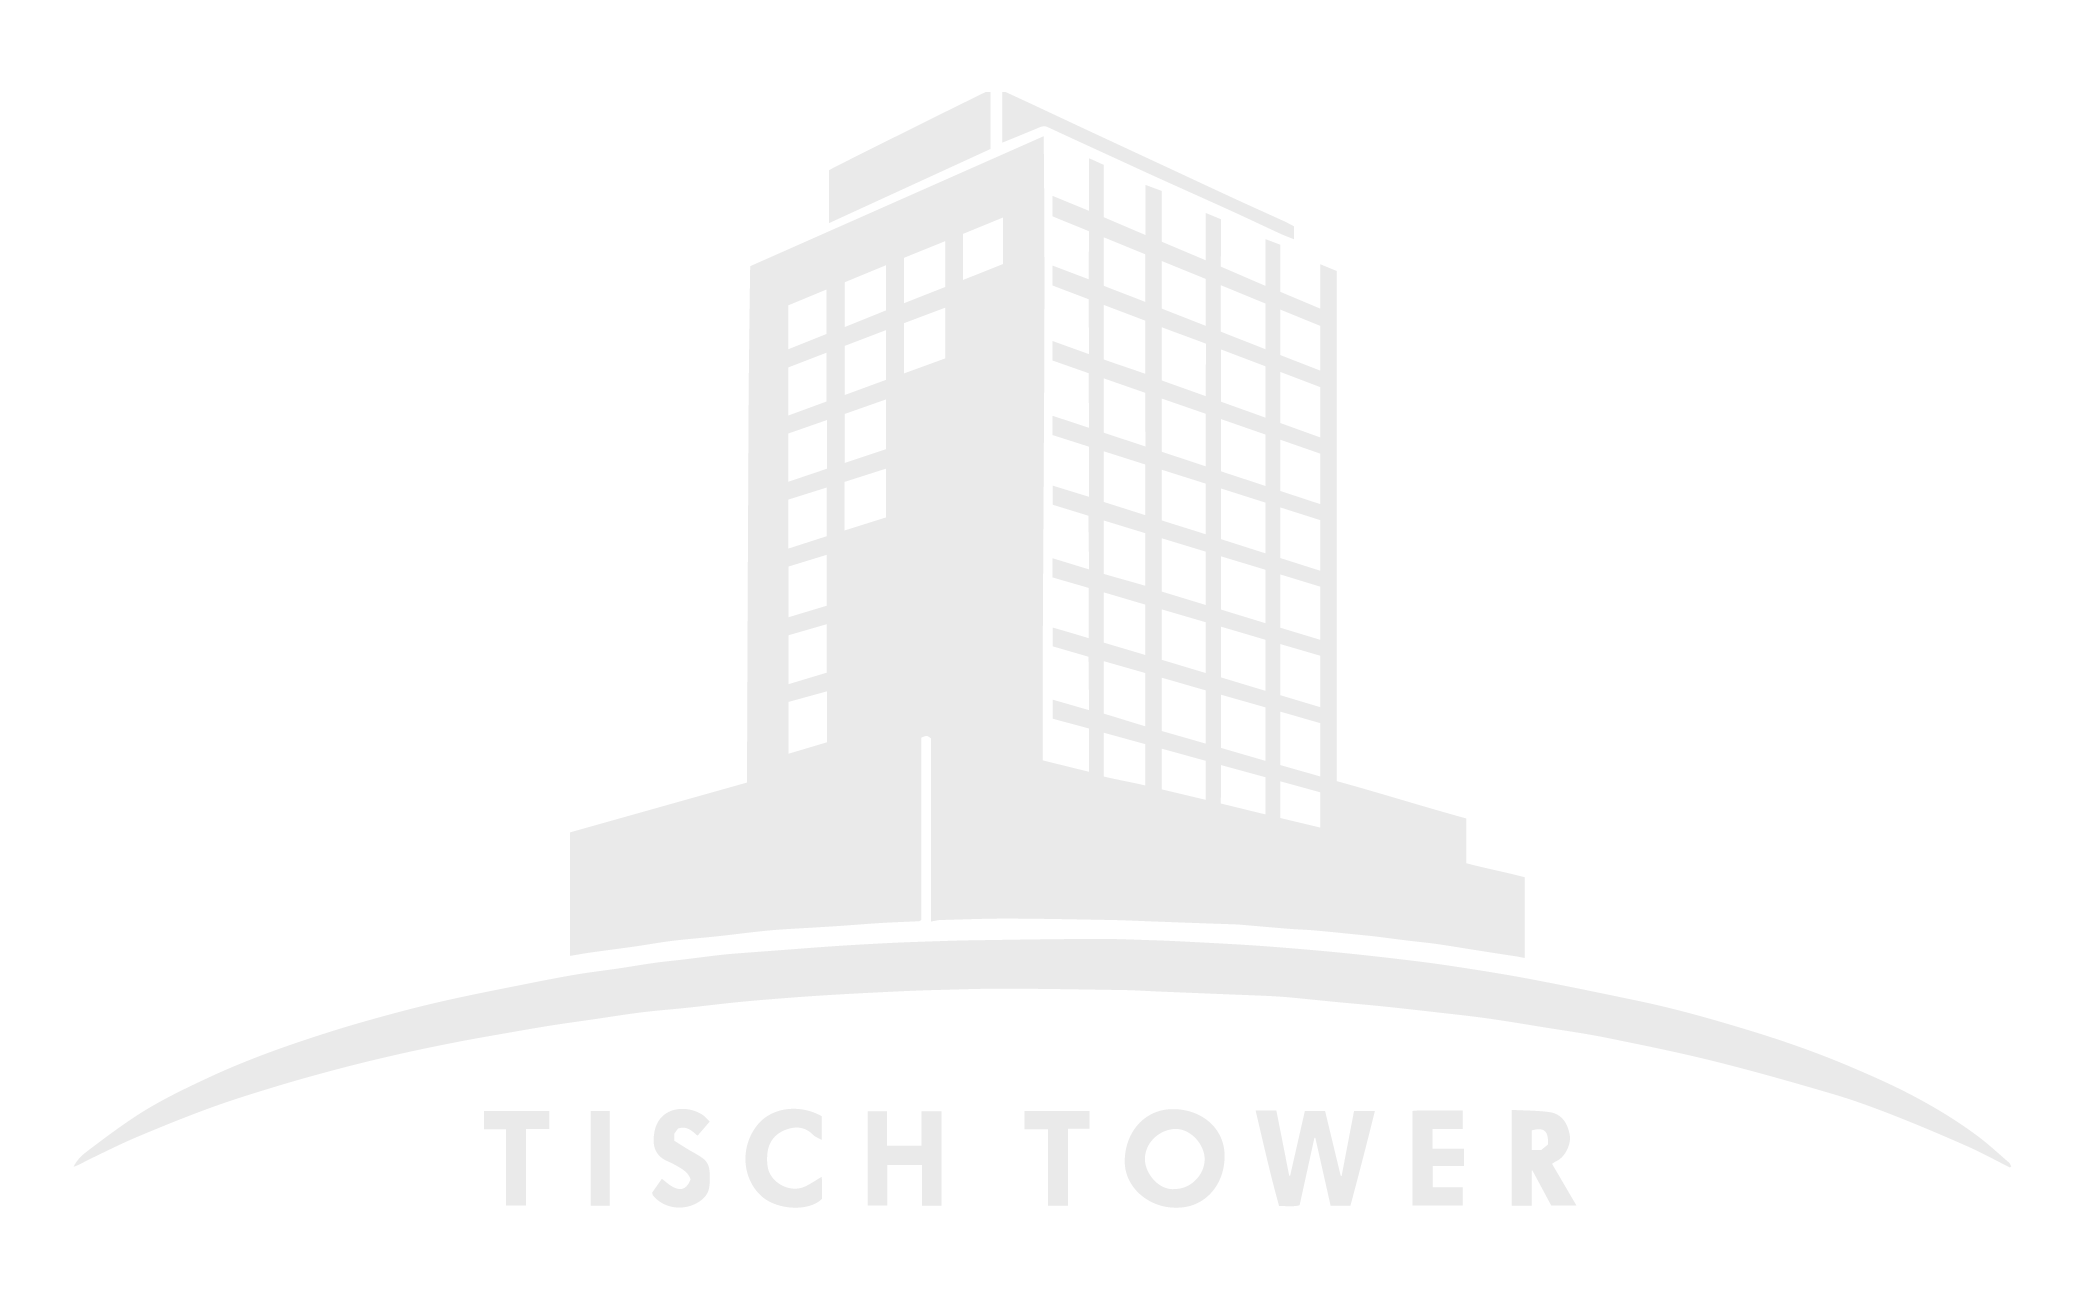 Tisch Tower